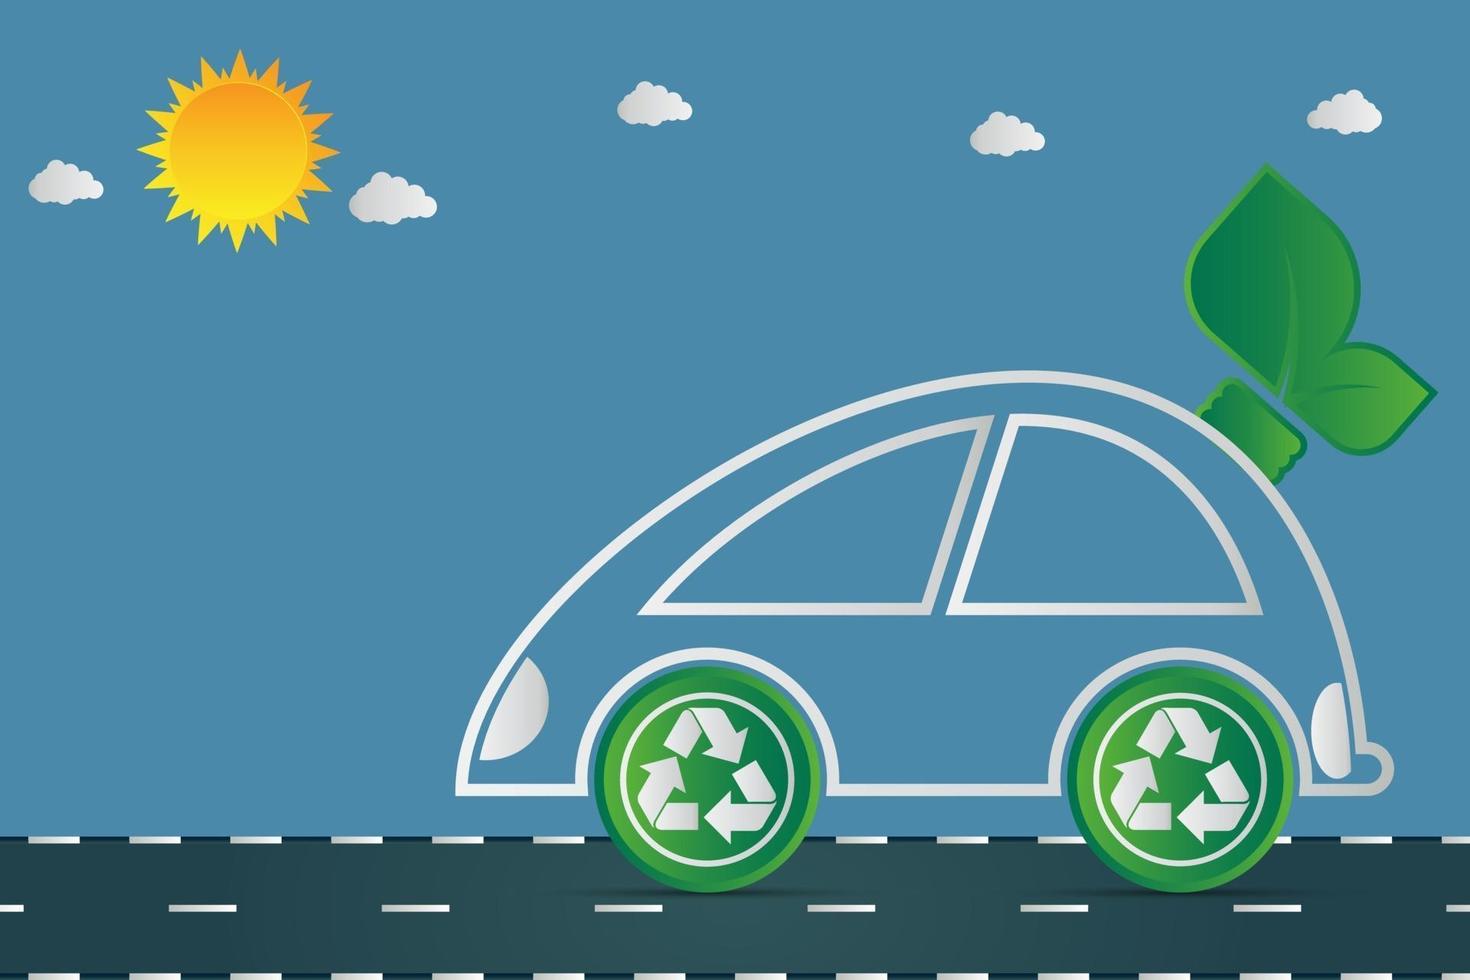 La ecología y el símbolo del coche del concepto del paisaje urbano ambiental con hojas verdes alrededor de las ciudades ayudan al mundo con ideas ecológicas vector